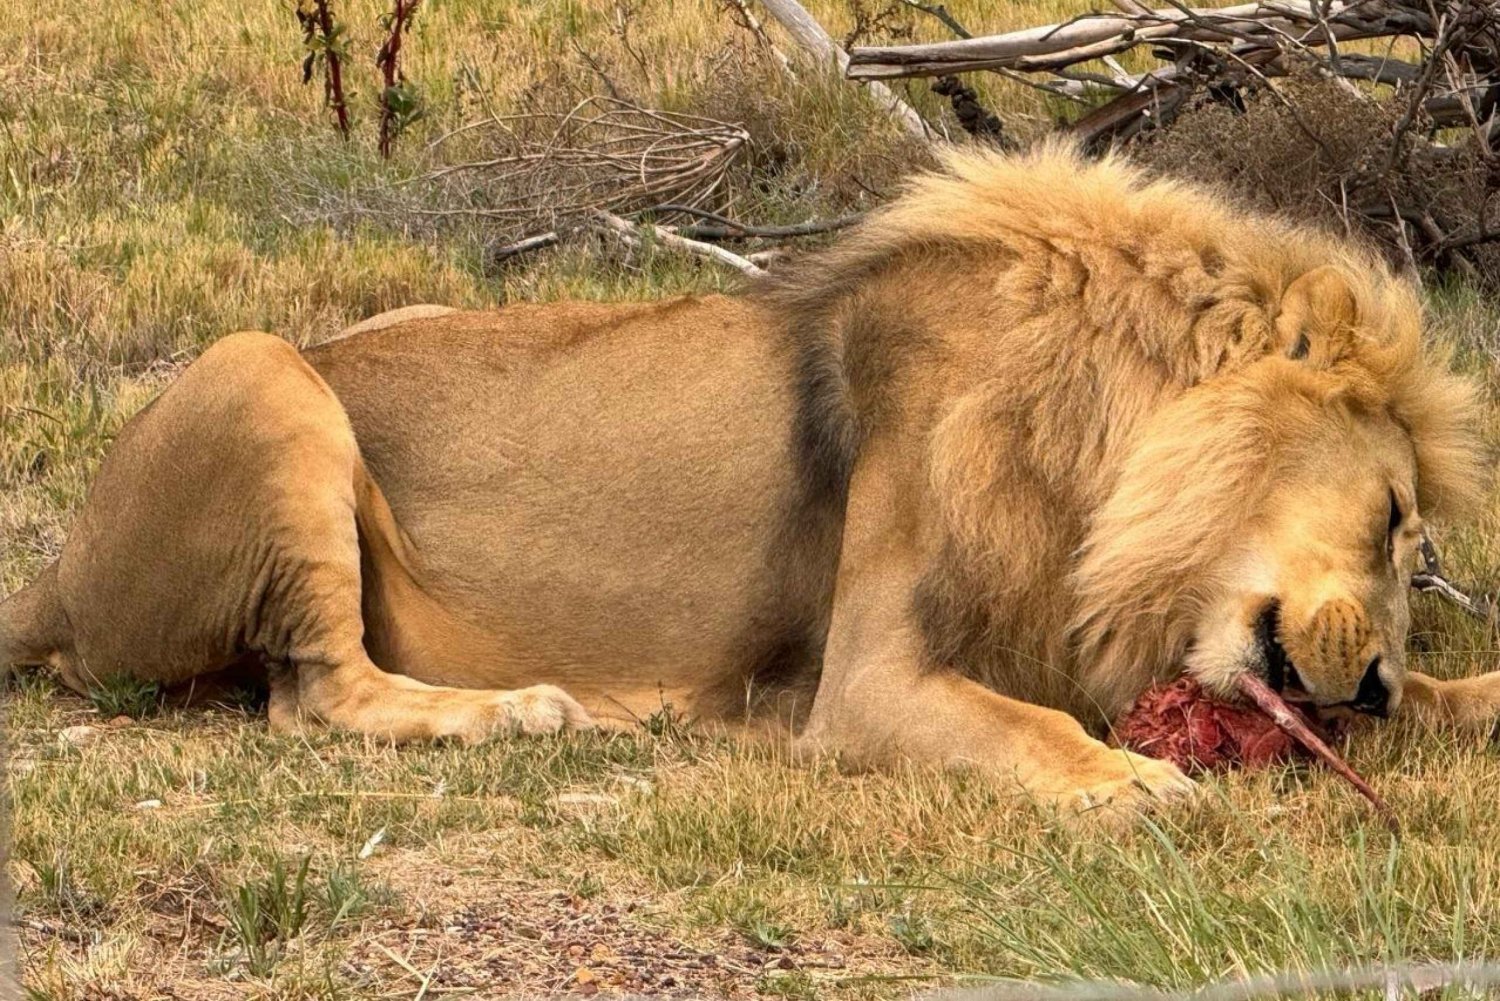 Wycieczka prywatna: Zobacz karmienie lwów z bliska - zarezerwuj teraz!